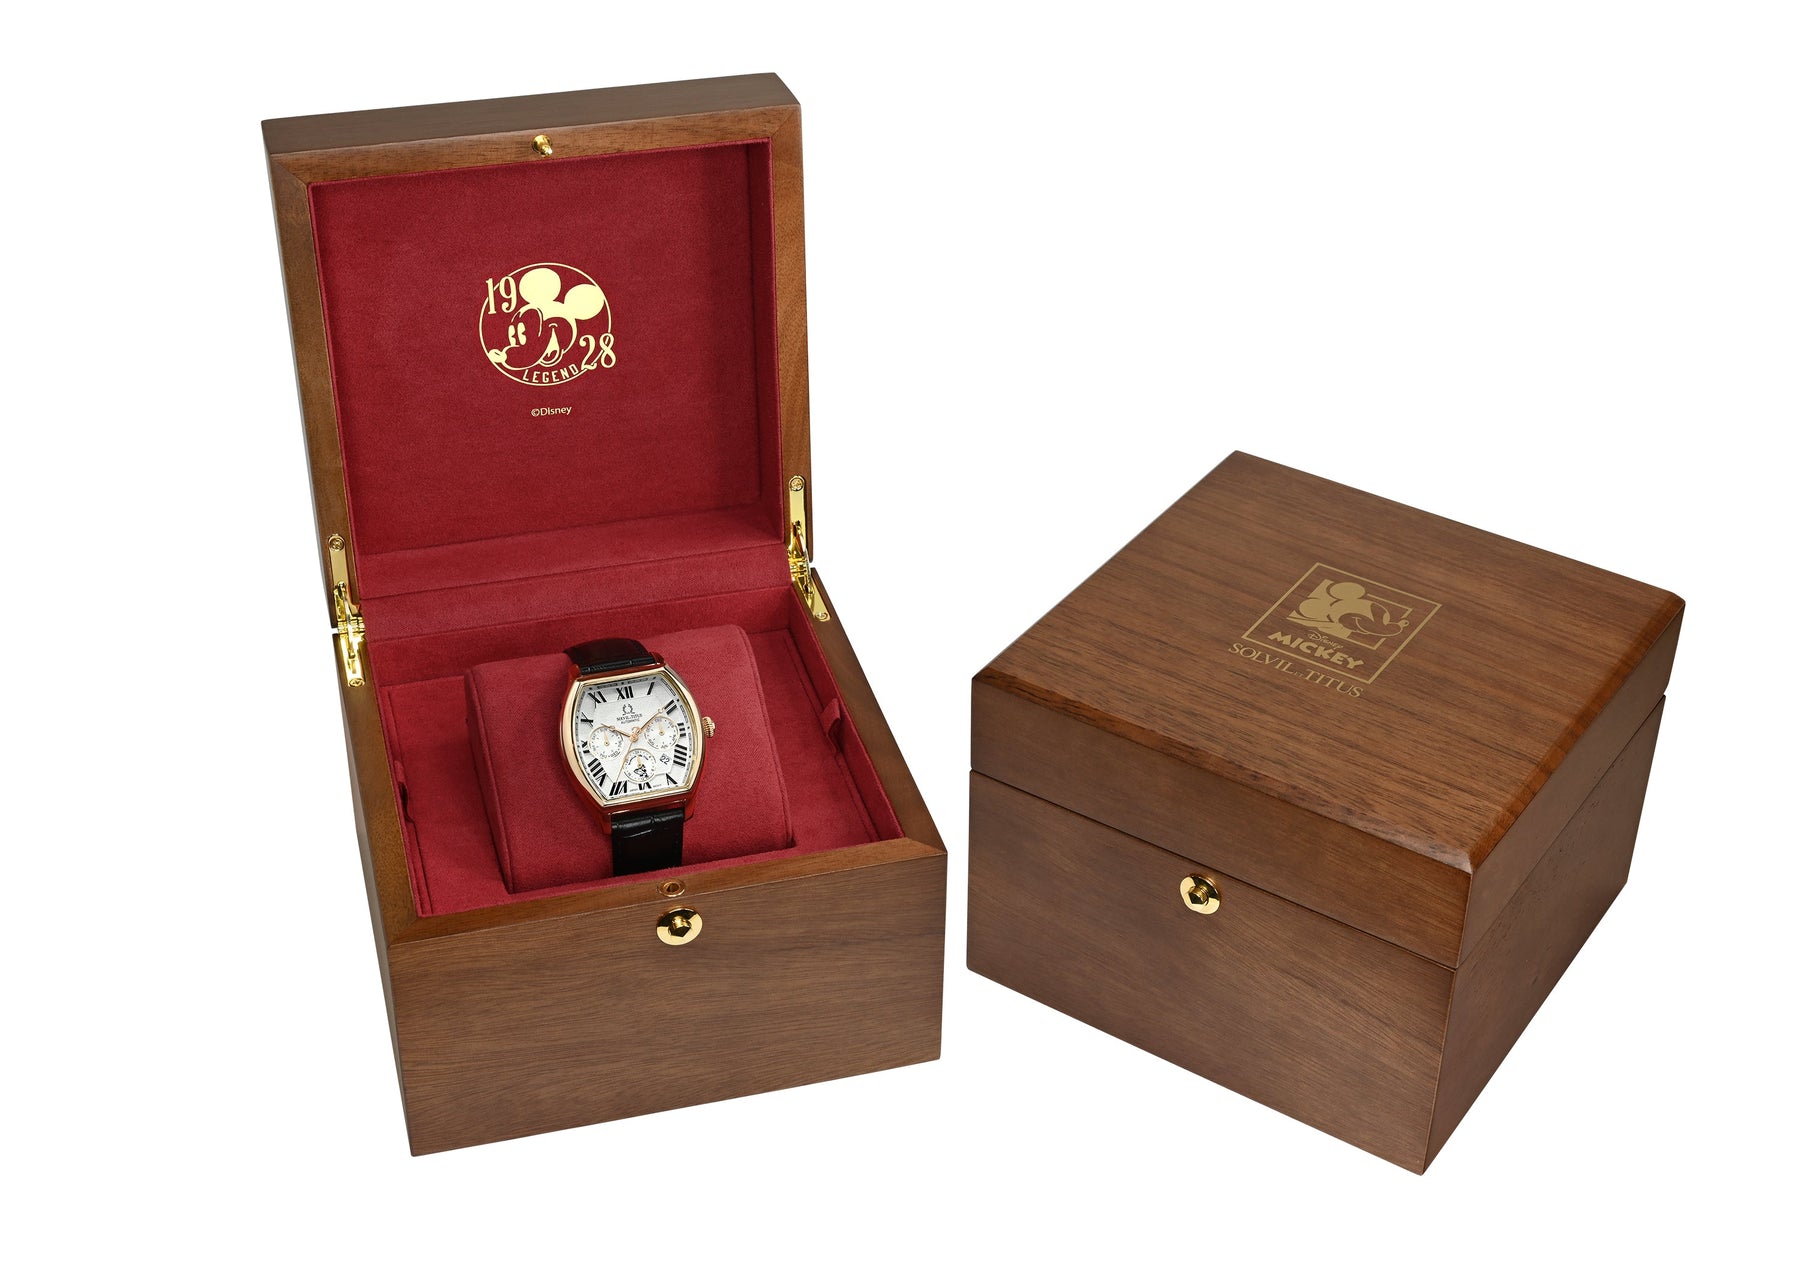 คอลเลกชัน Barrique “Mickey Mouse 95th Anniversary” นาฬิกาผู้ชาย ลิมิเตดอิดิชัน เรือนสีทองอ่อน มัลติฟังก์ชัน ระบบออโตเมติก สายหนัง ขนาดตัวเรือน 40 มม. (W06-03352-002)